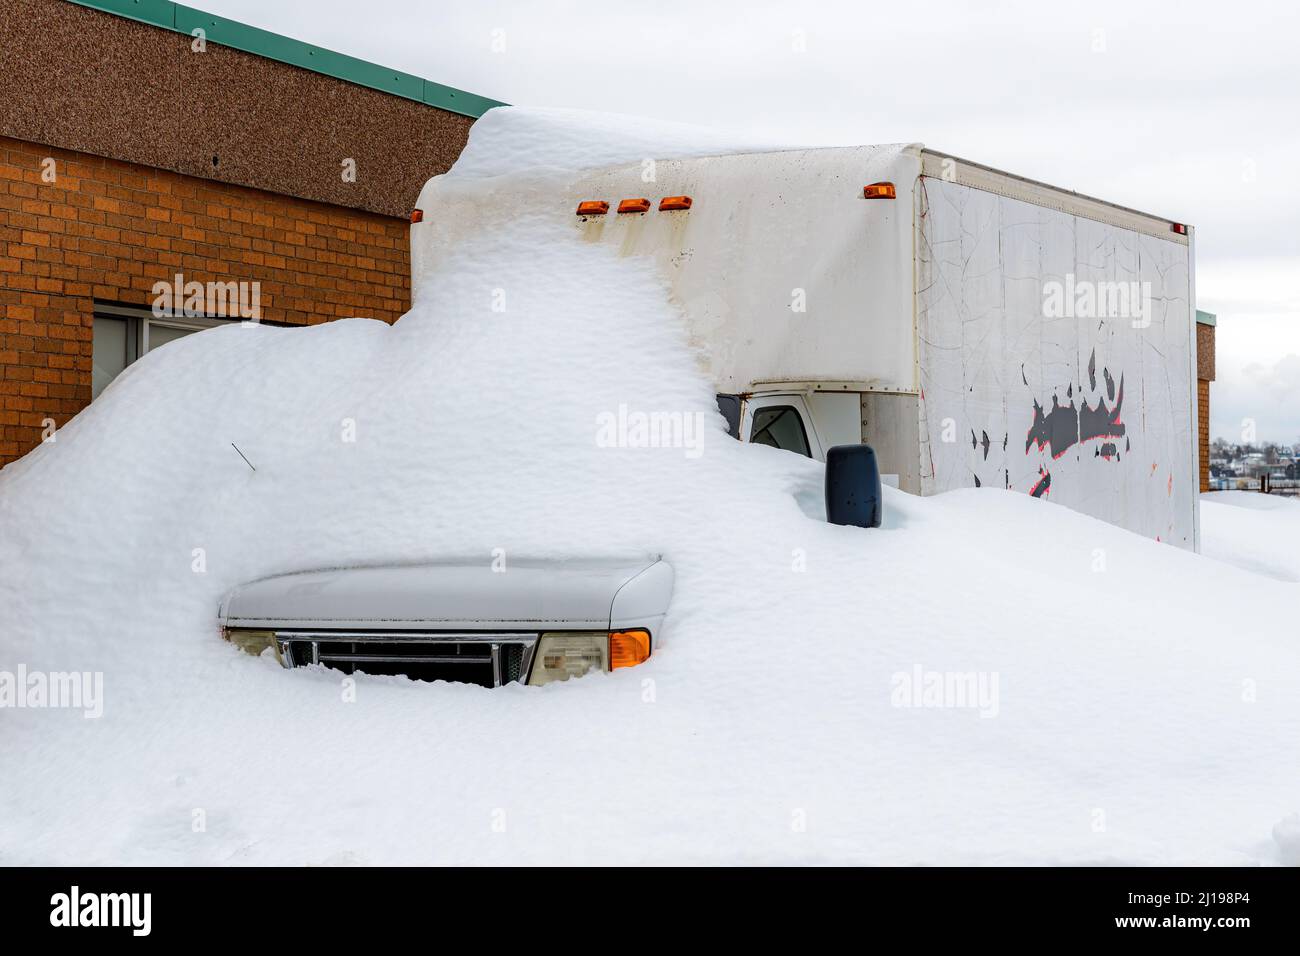 Ein generischer Lieferwagen, der teilweise von Schnee vergraben ist, neben einem Ziegelgebäude. Bewölktes Himmel. Fahrzeug ist nicht identifizierbar. Stockfoto